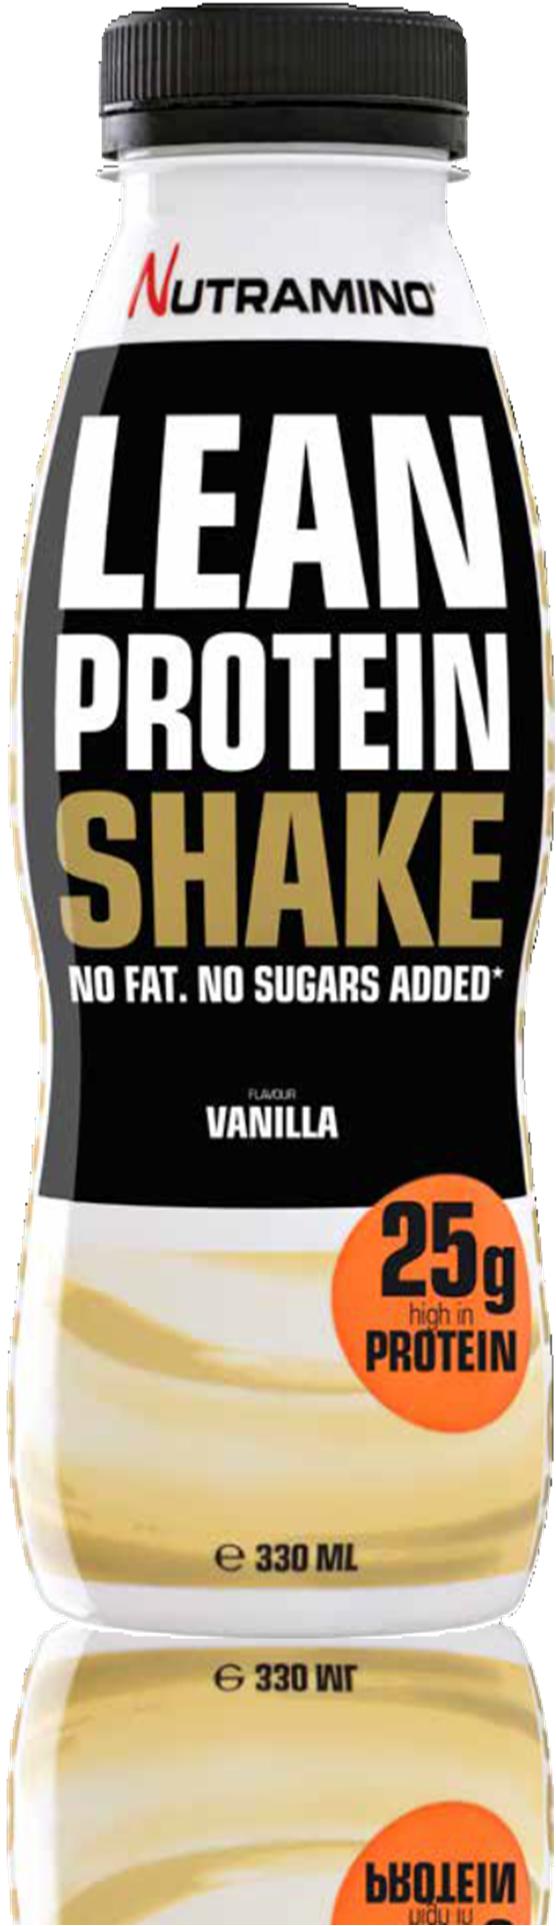 LEAN PROTEIN SHAKE VANILLA 330 ml Nutramino Lean Protein Shake on maailman herkullisin dieettishake. Se sisältää 25 g proteiinia, joka auttaa tukemaan lihasten palautumista.